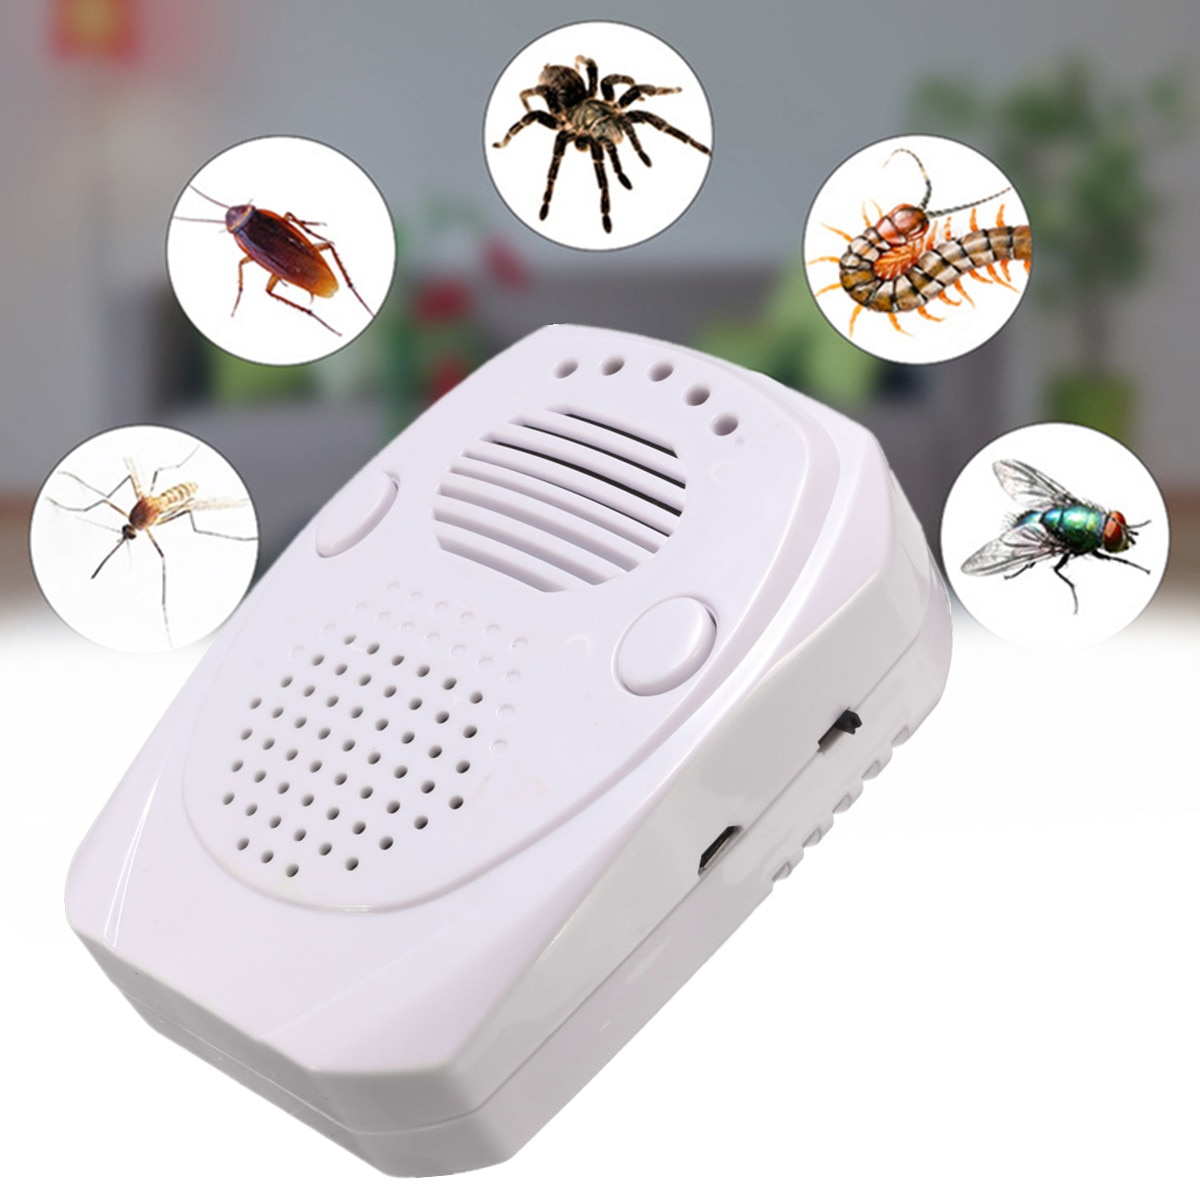 Какой ультразвуковой отпугиватель против тараканов лучше и эффективнее?